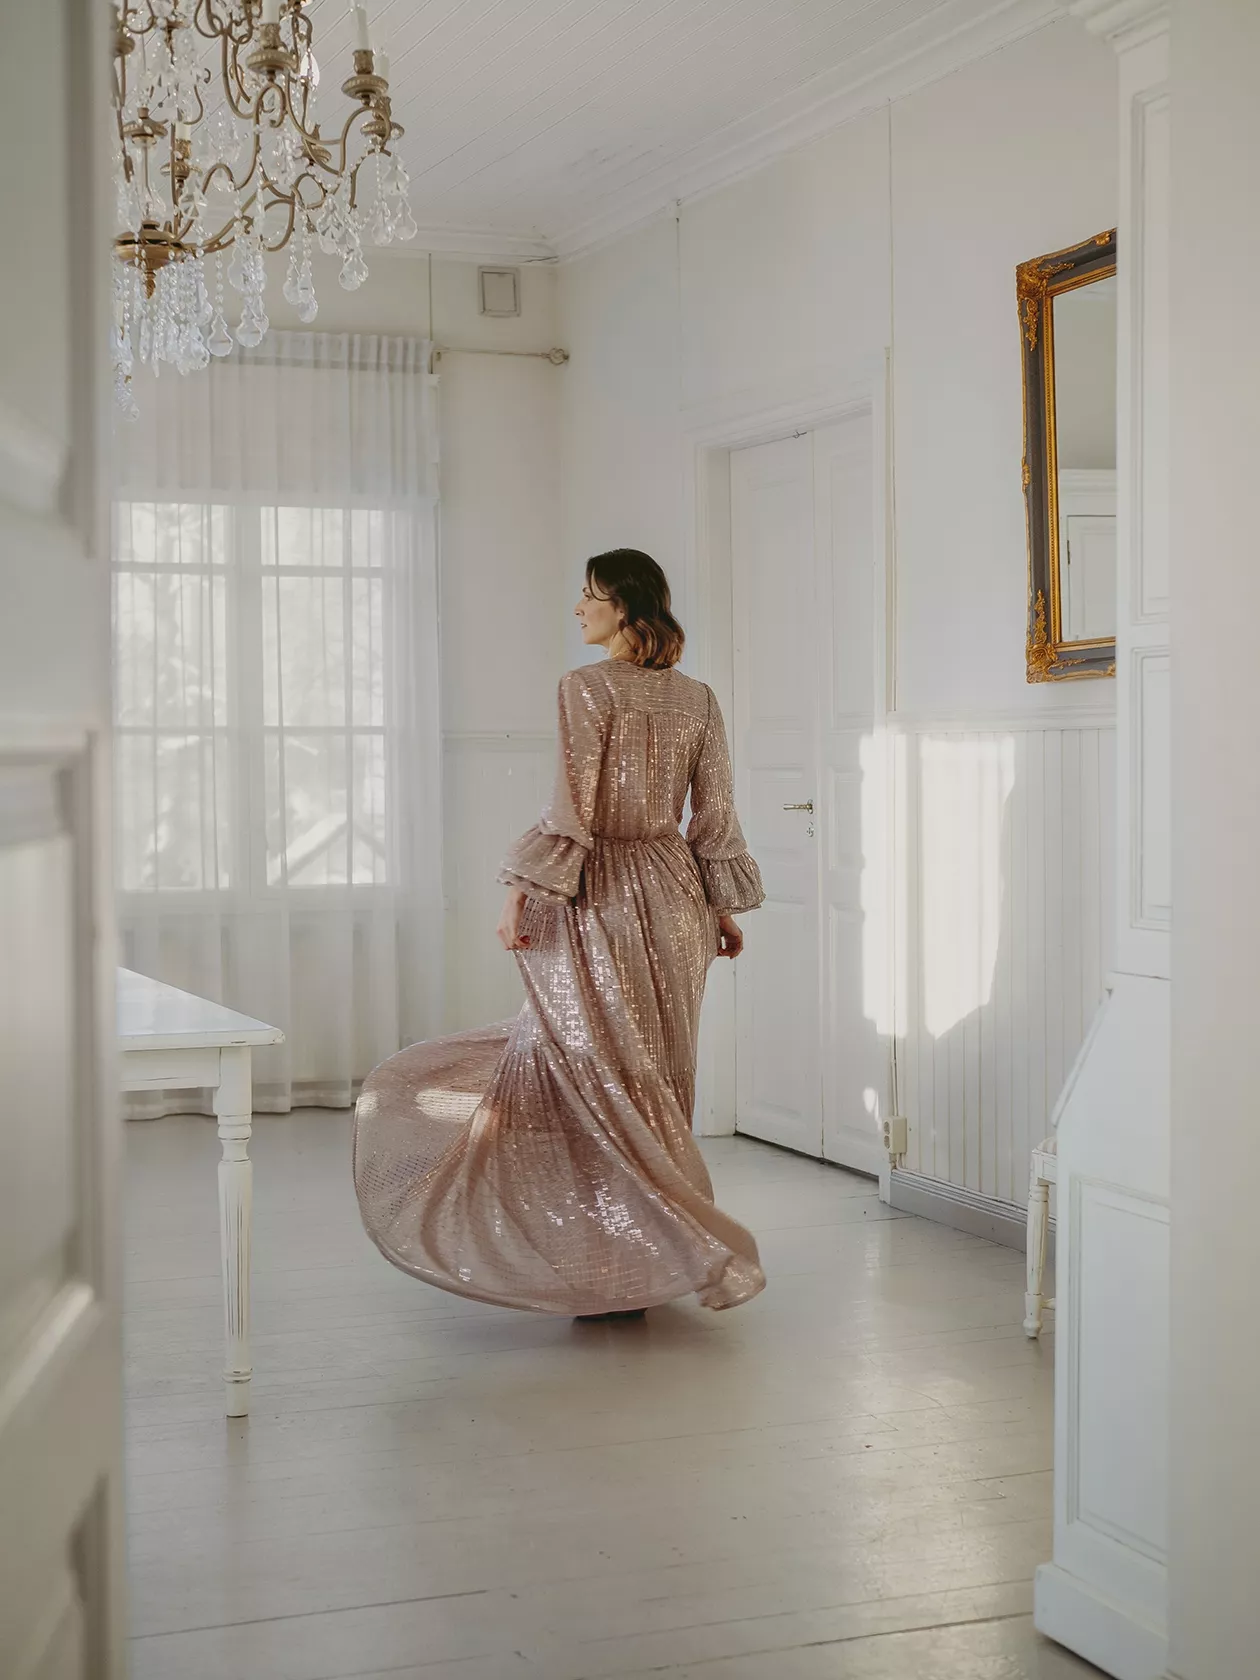 Kevään mekkomuoti 2021. Hennon vaaleanpunaisen mekon kangas kiiltelee upeasti, 890 e, Katri Niskanen.